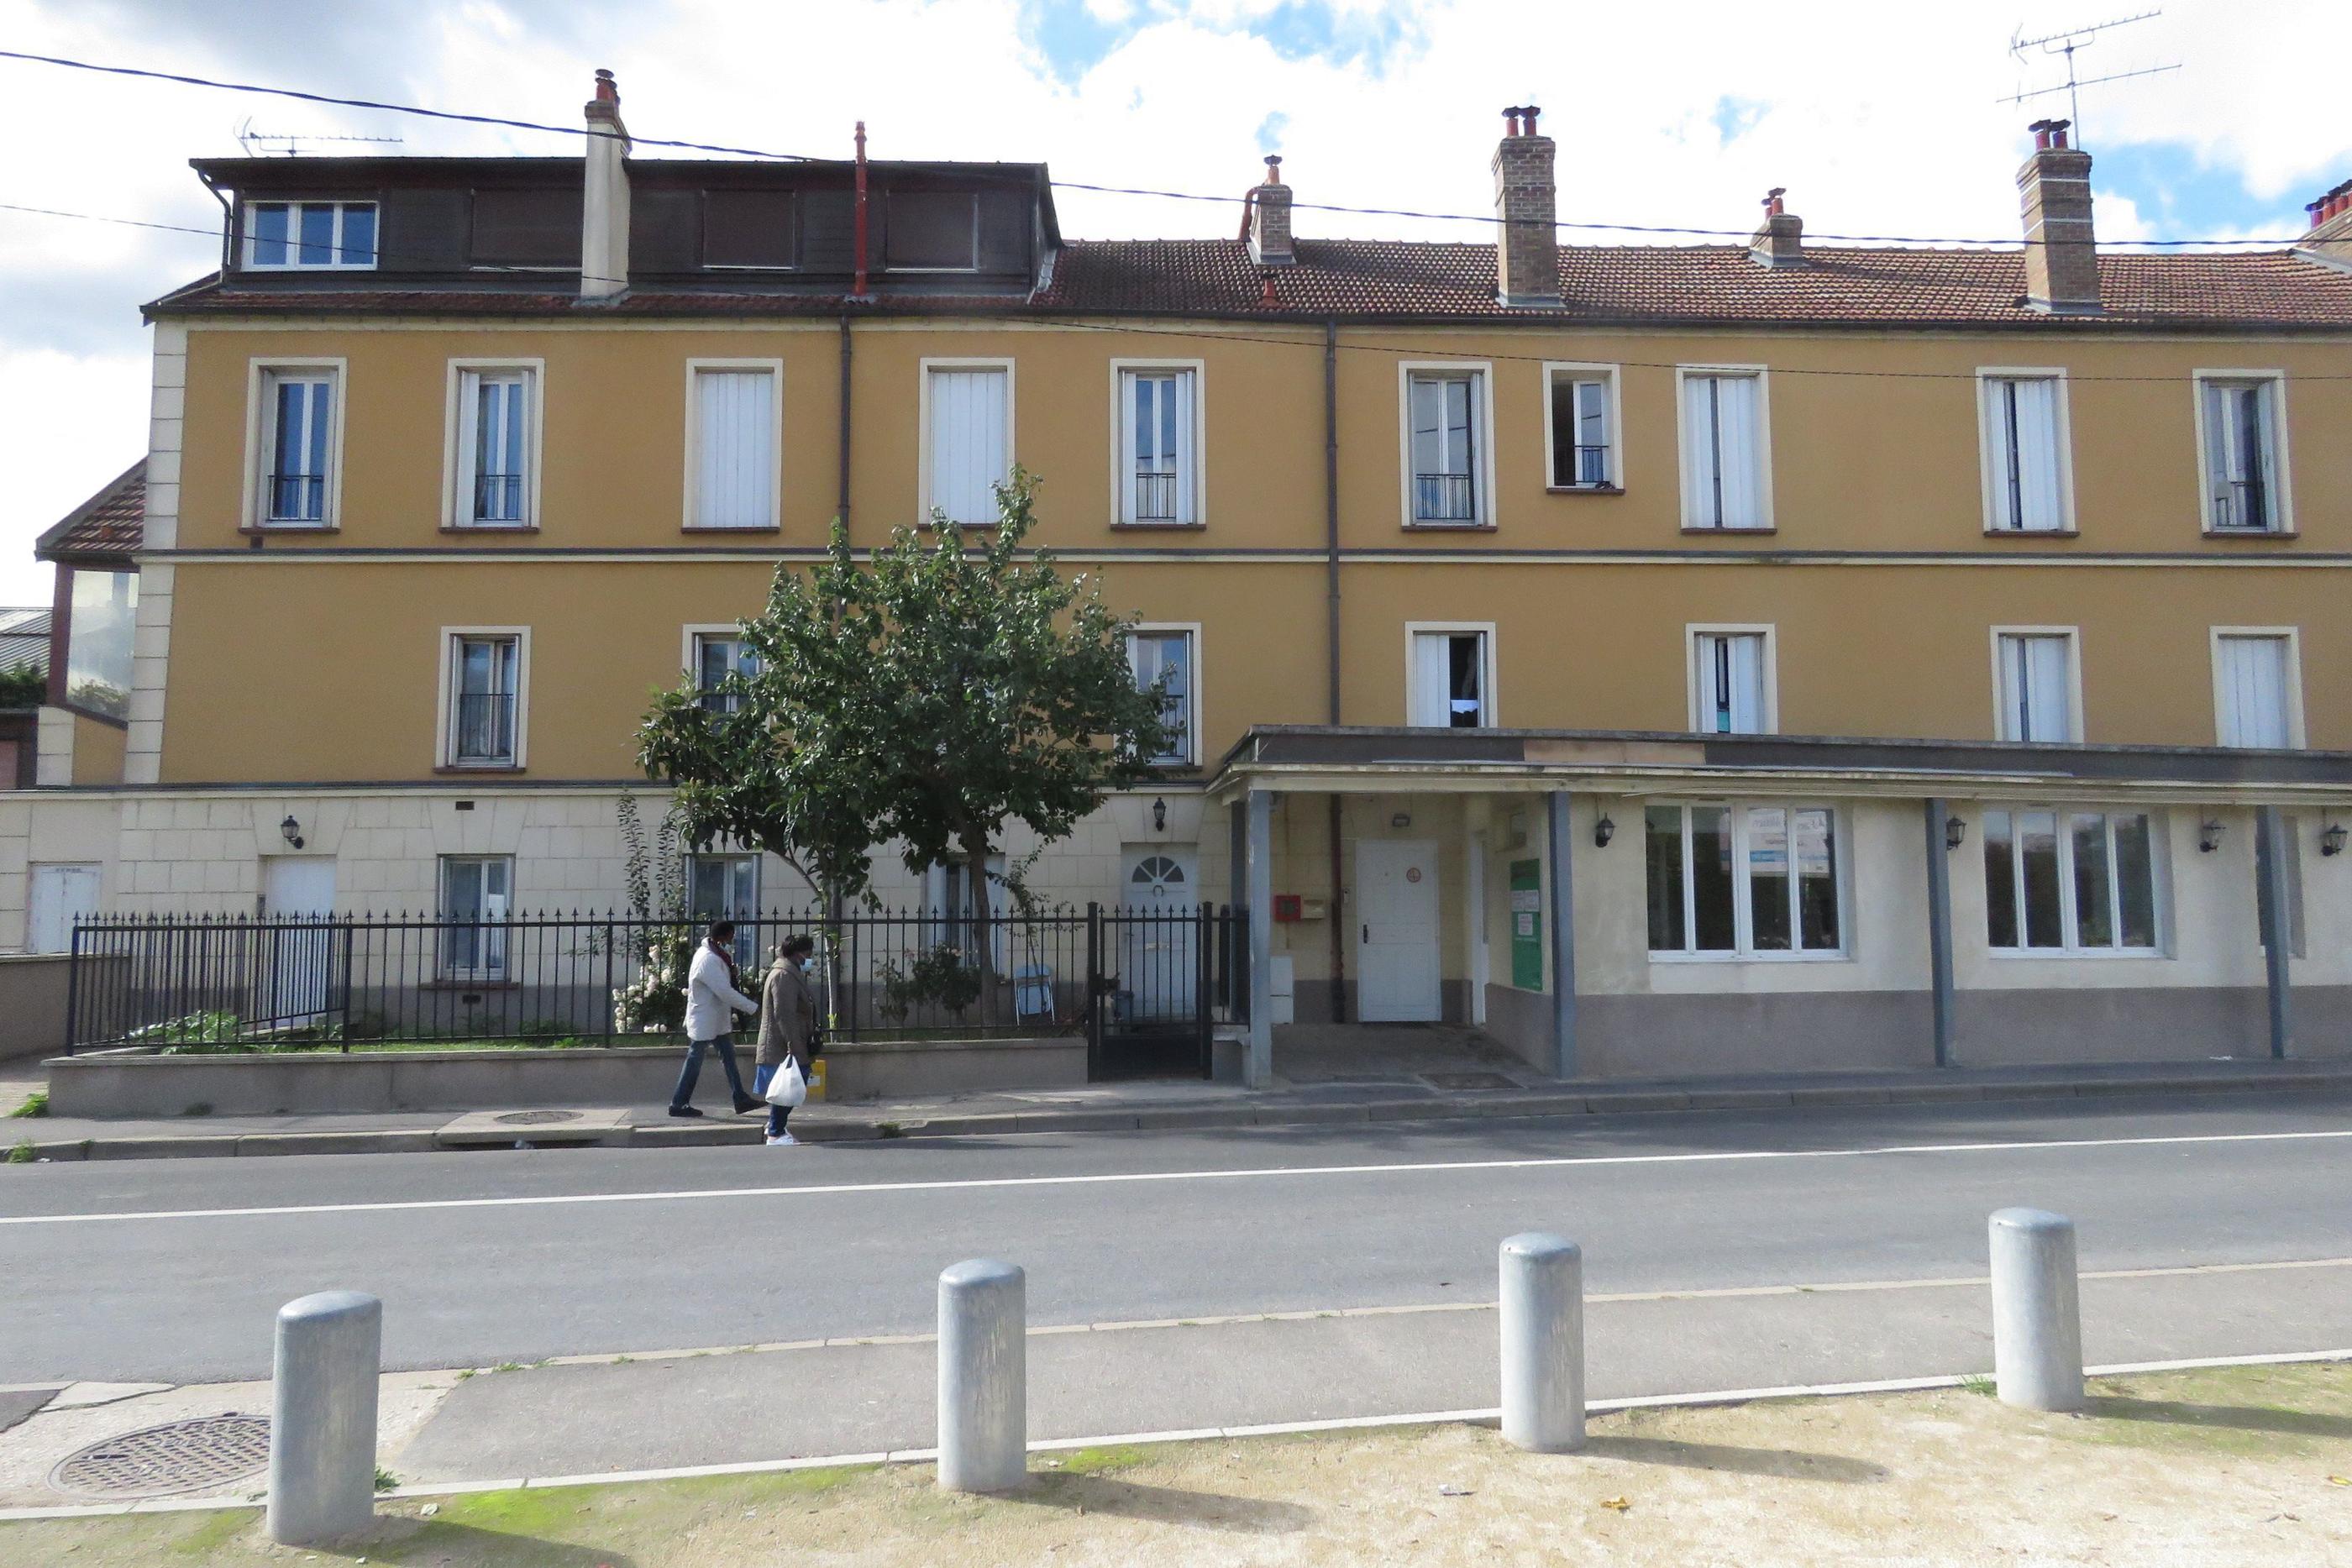 Viry-Chatillon (Essonne), octobre 2020. C'est dans cet hôtel social qu'une femme et son bébé avaient été agressés au couteau. L'accusé encourt la réclusion criminelle à perpétuité. LP/Nolwenn Cosson